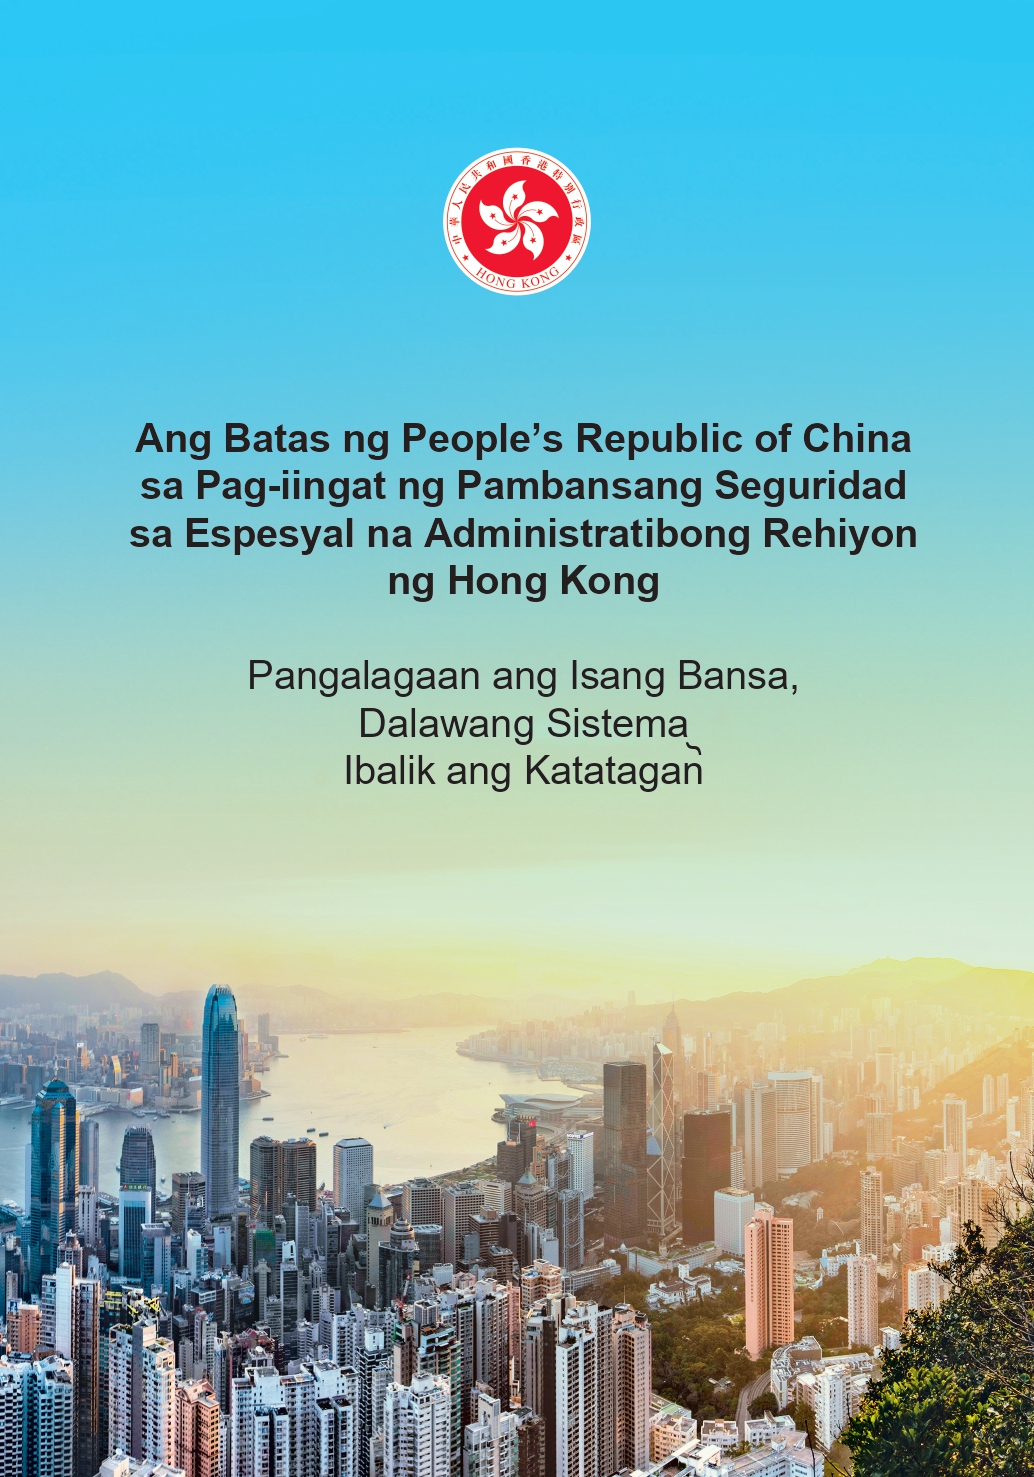 Ang Batas ng People’s Republic of China <br>sa Pag-iingat ng Pambansang Seguridad <br>sa Espesyal na Administratibong Rehiyon <br>ng Hong Kong